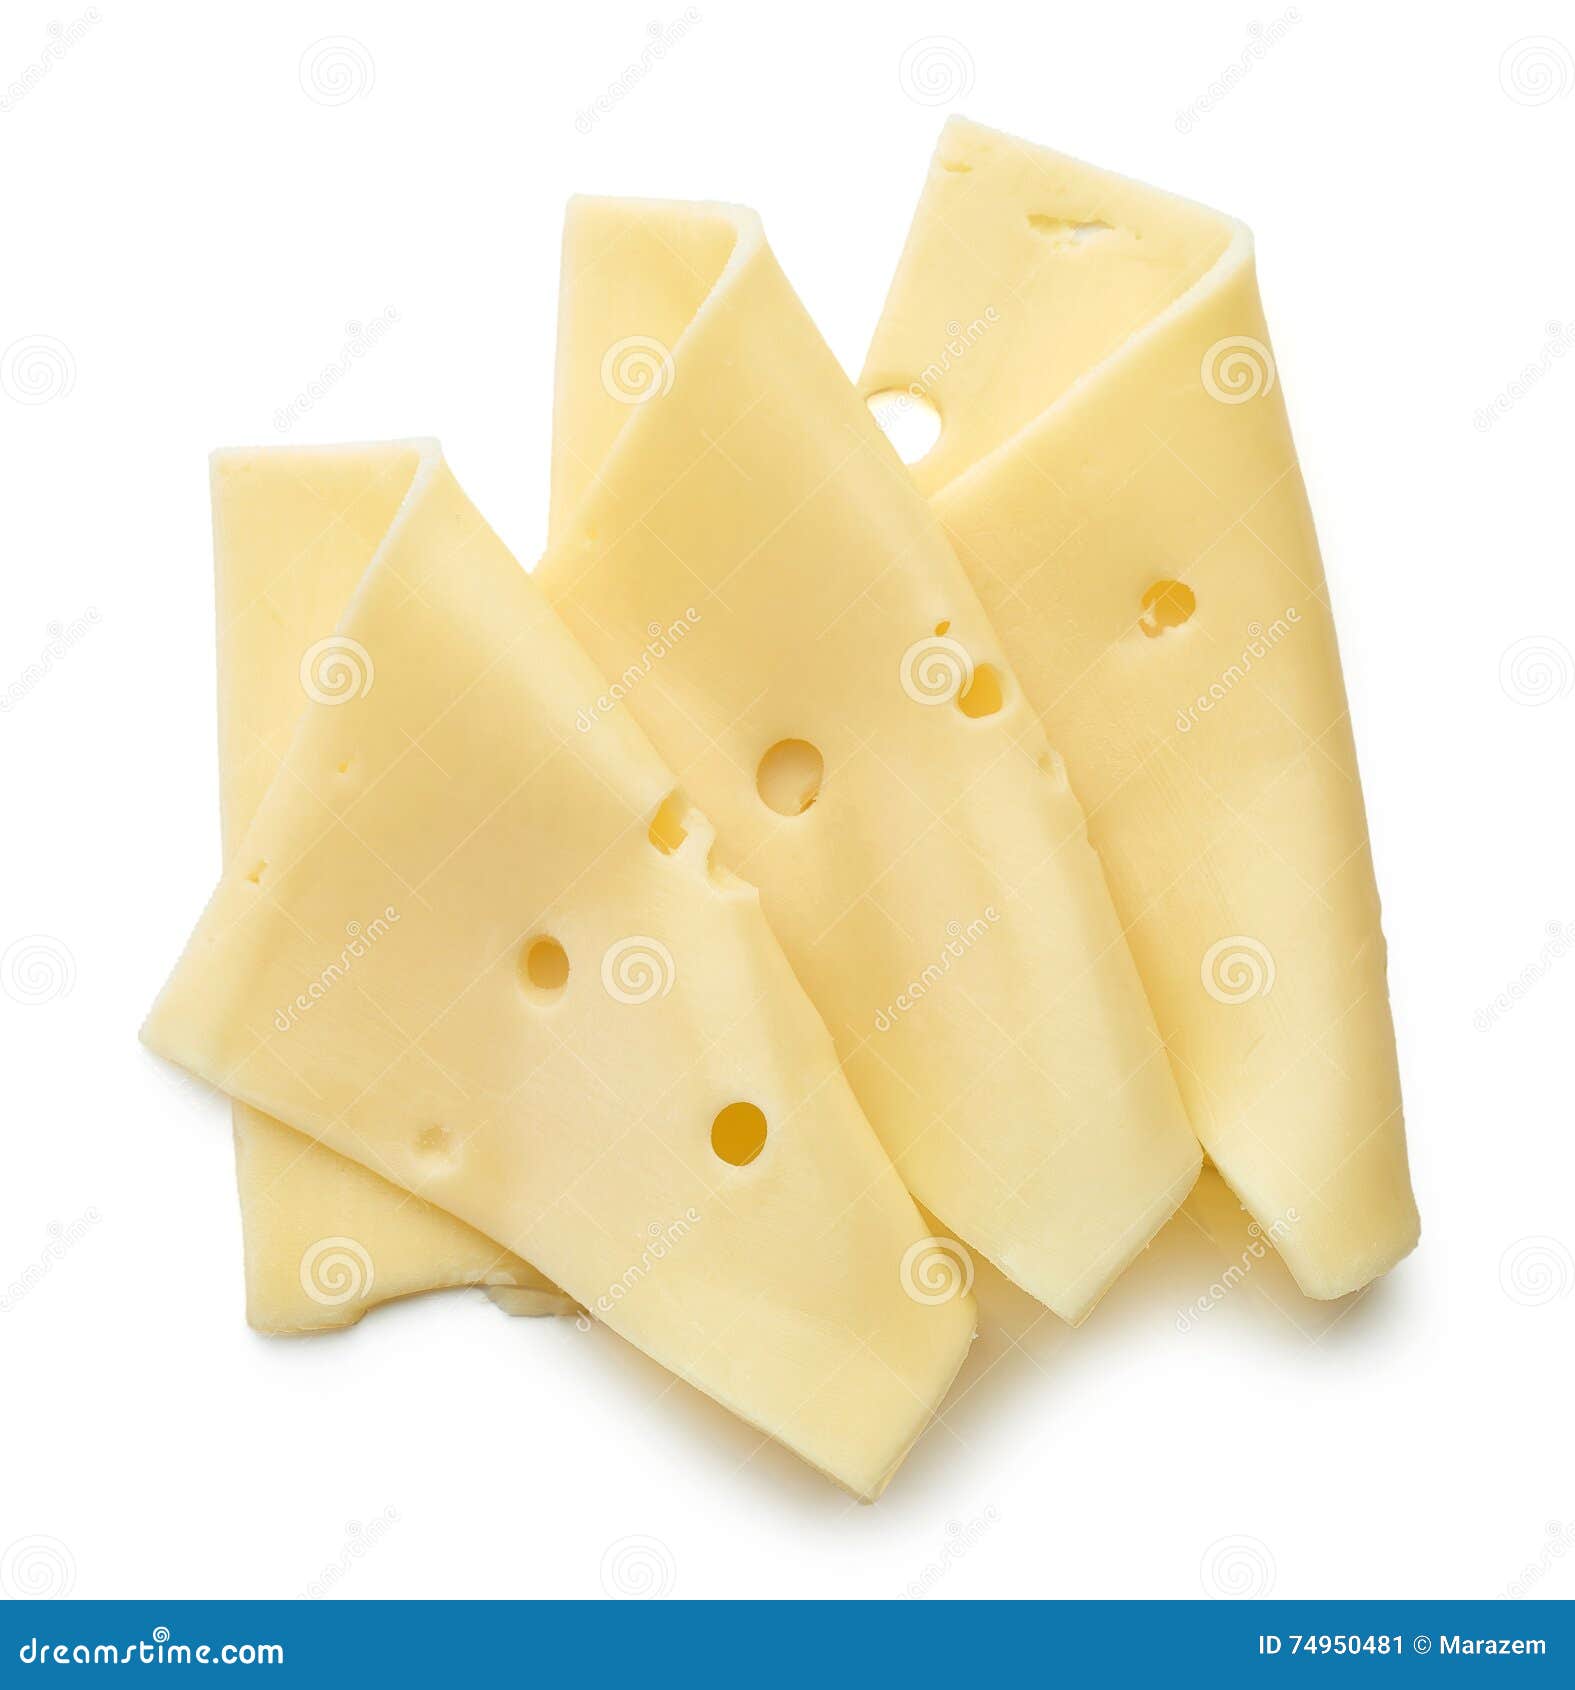 Бела чиз. Ломтик сыра на белом фоне. Ломтики белого сыра. Кусочки сыра сверху. Сыр на белом фоне вид сверху.